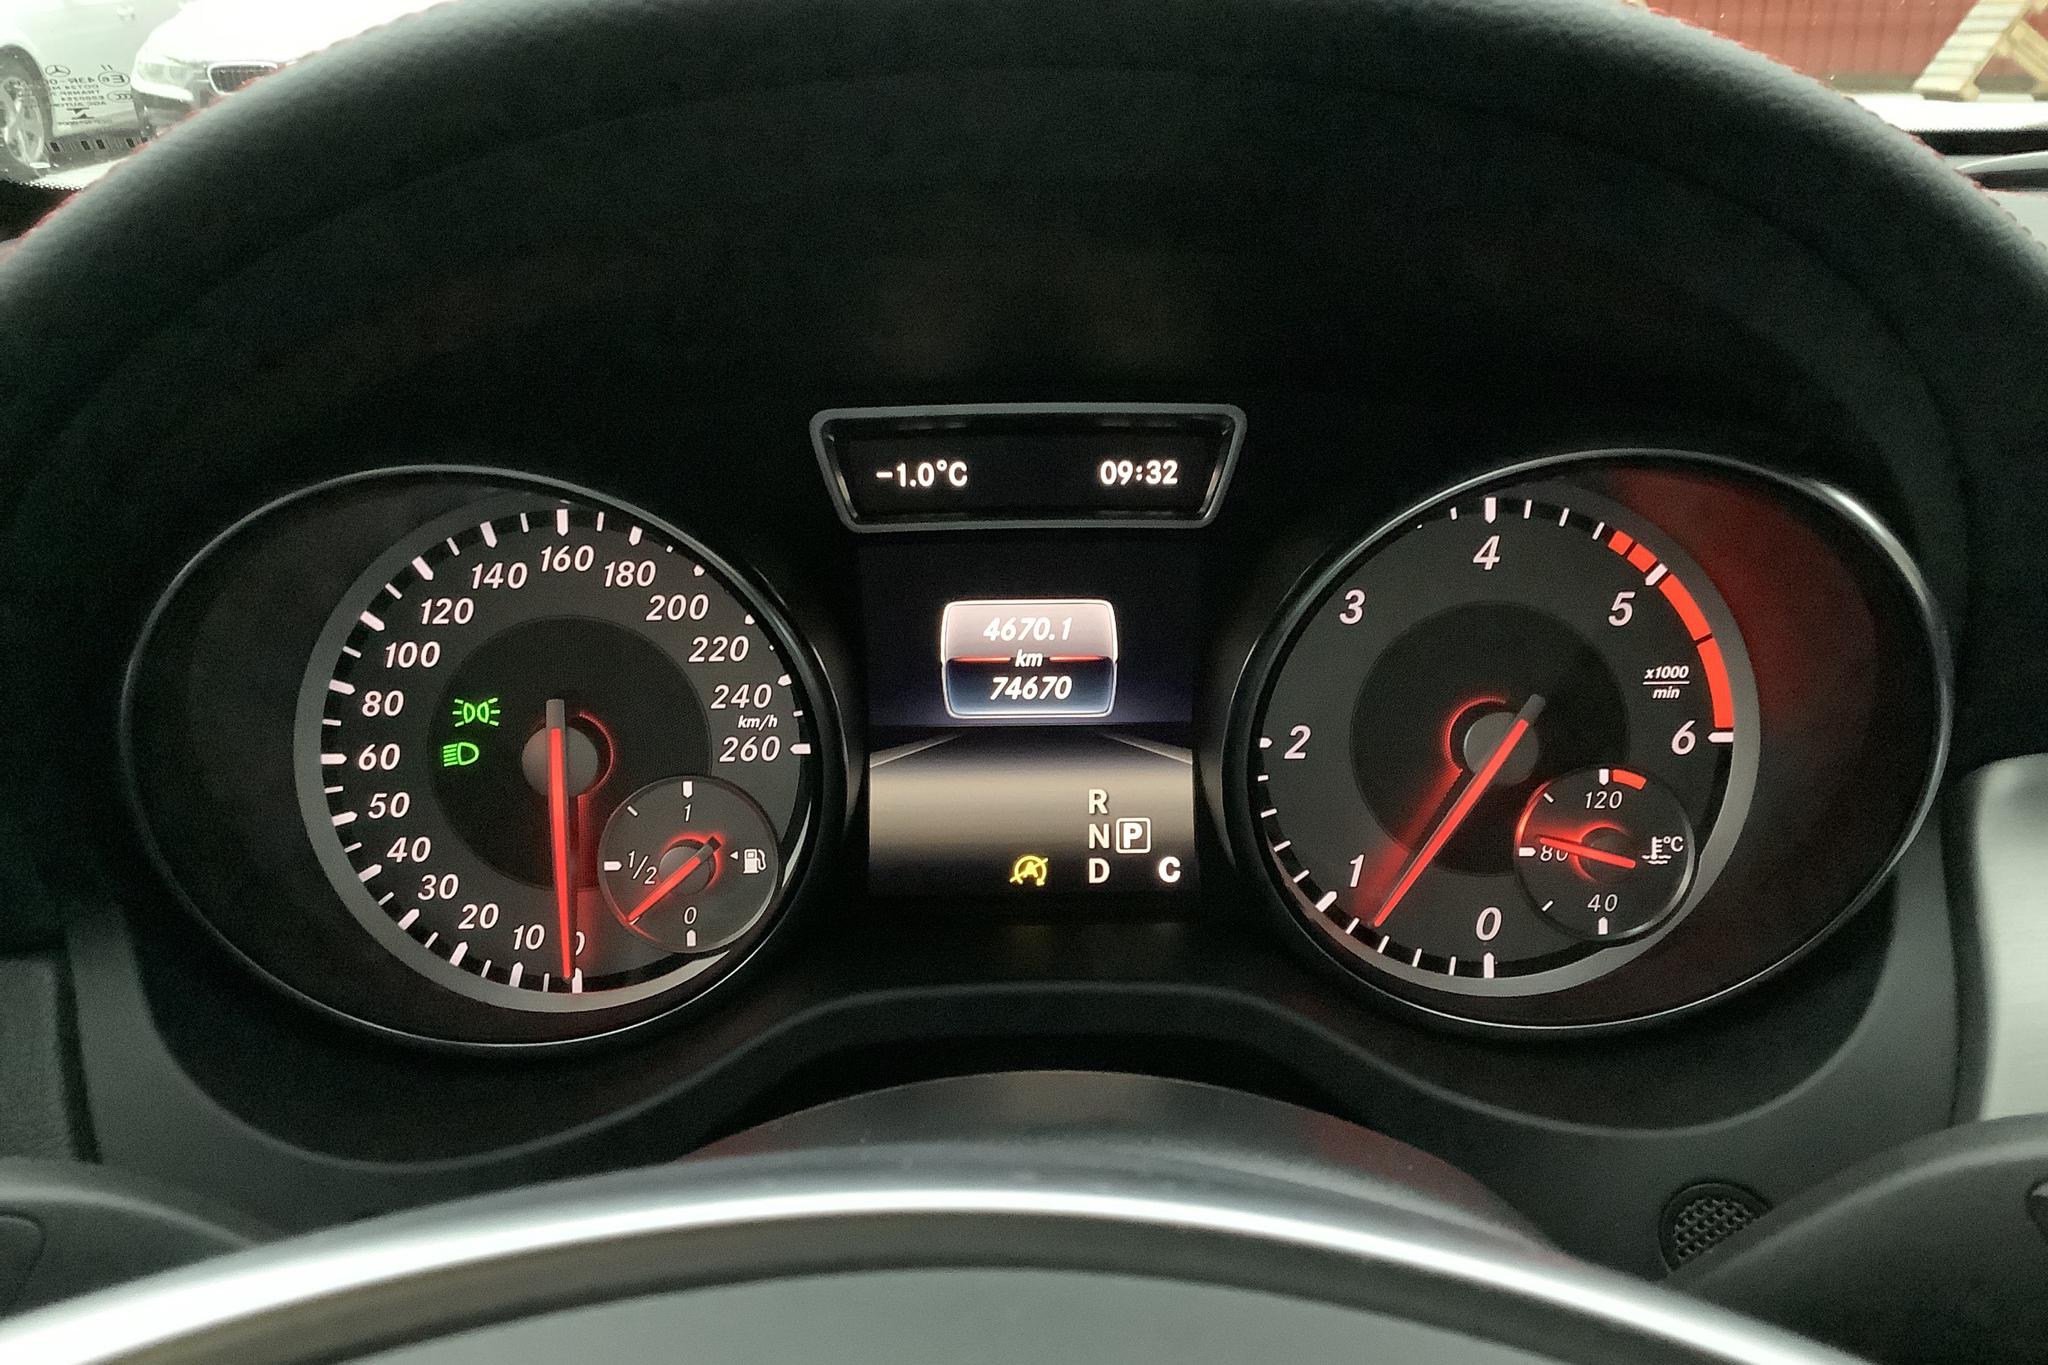 Mercedes CLA 220 d 4MATIC (177hk) - 74 690 km - Automatic - red - 2016